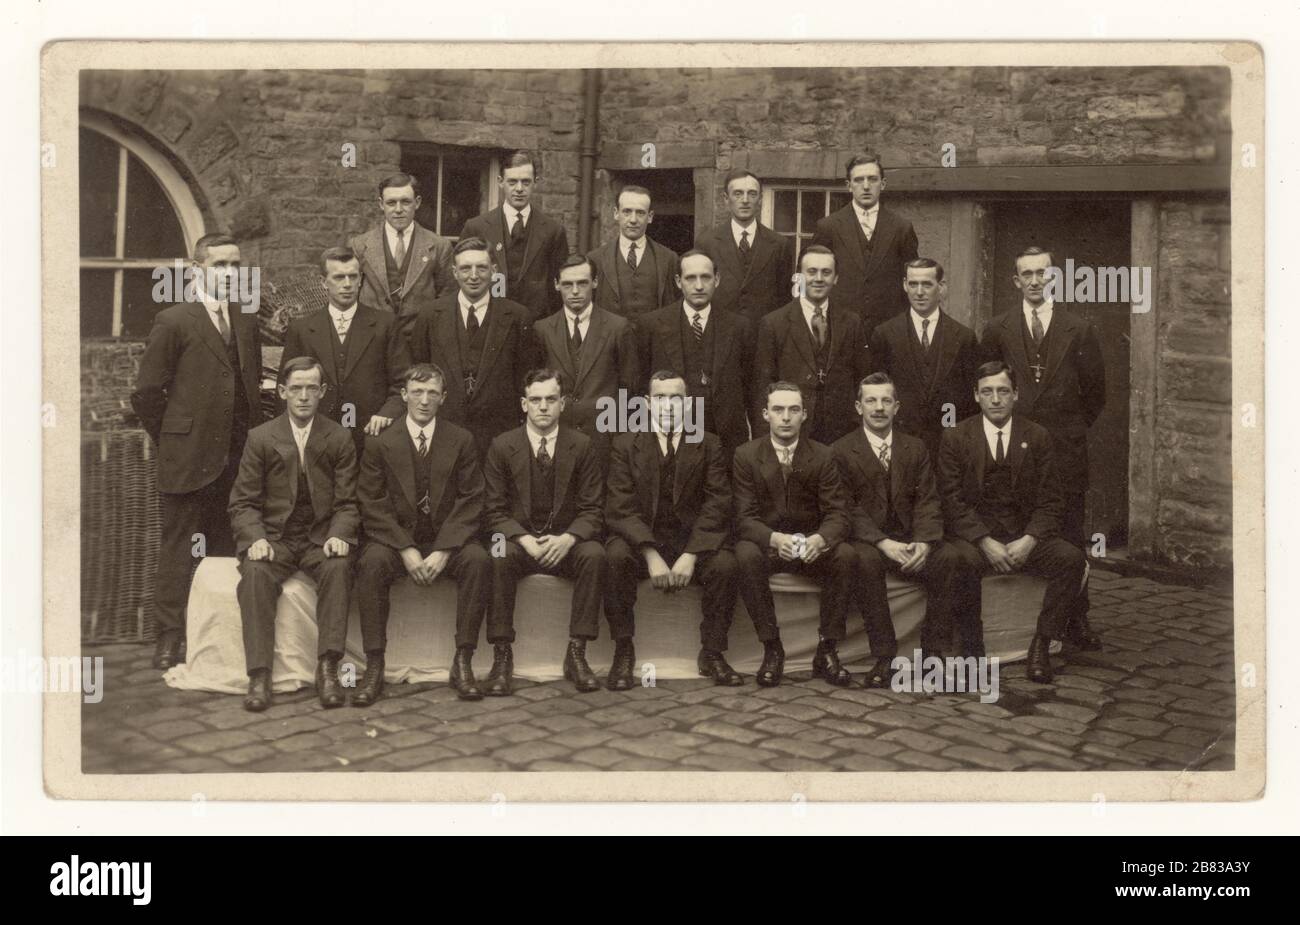 Carte postale originale du début des années 1900, représentant un groupe de gentlemen travaillant dans un bureau avec des costumes élégants, pour une photo de groupe à l'extérieur, Perverance Mill, (Albion Mill) Padiham, Burnley, Lancashire, Angleterre, Royaume-Uni 1919 Banque D'Images